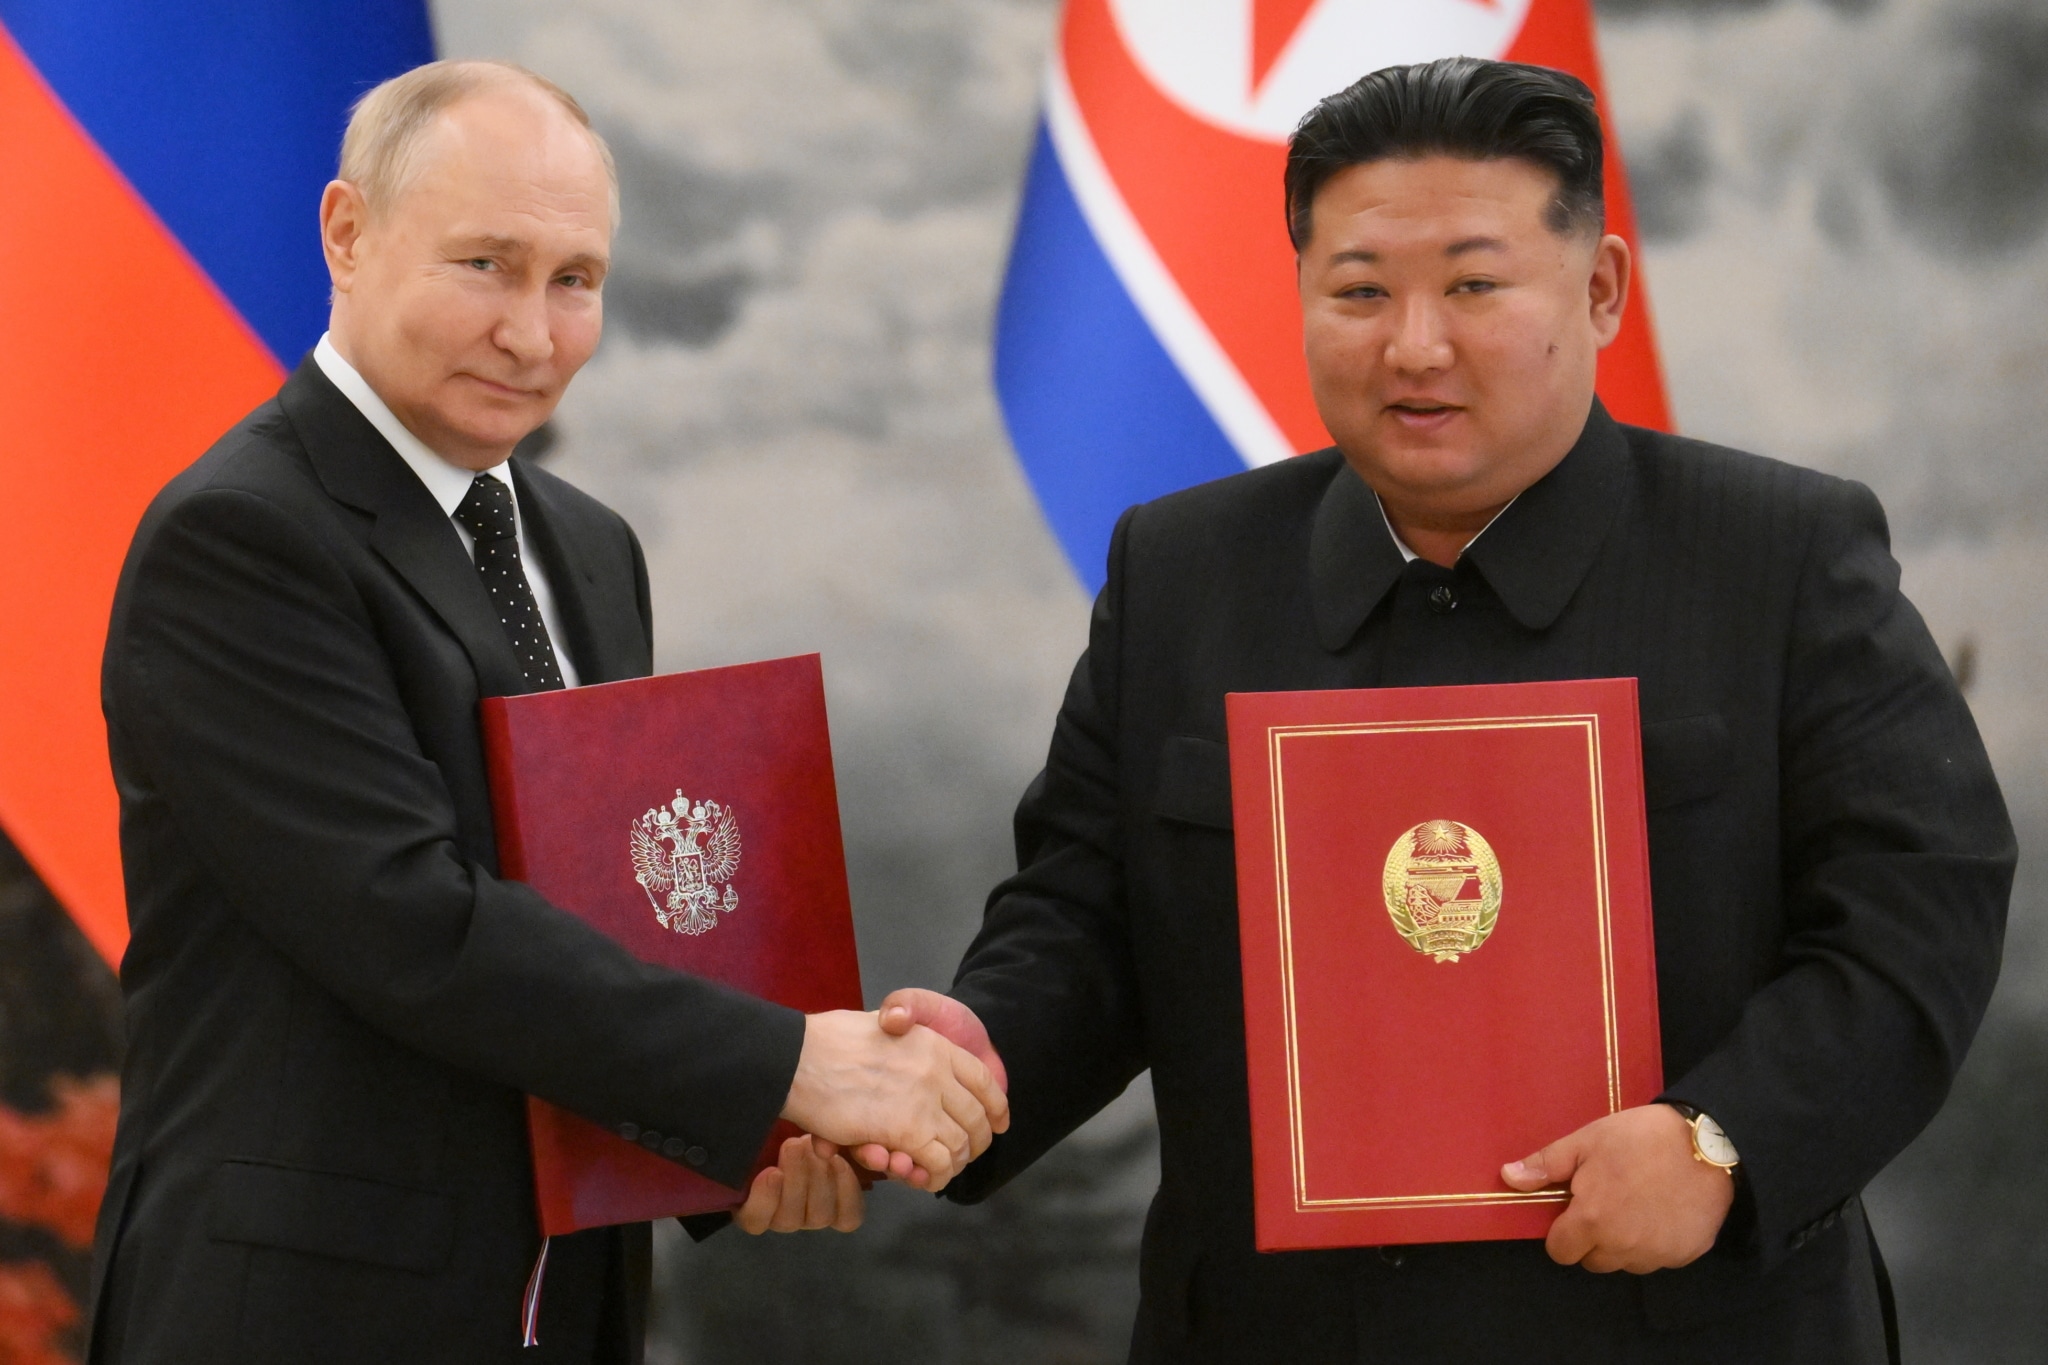 Putin no descarta la posibilidad de proporcionar armamento a Corea del Norte, similar a cómo la OTAN proporciona armas a Ucrania